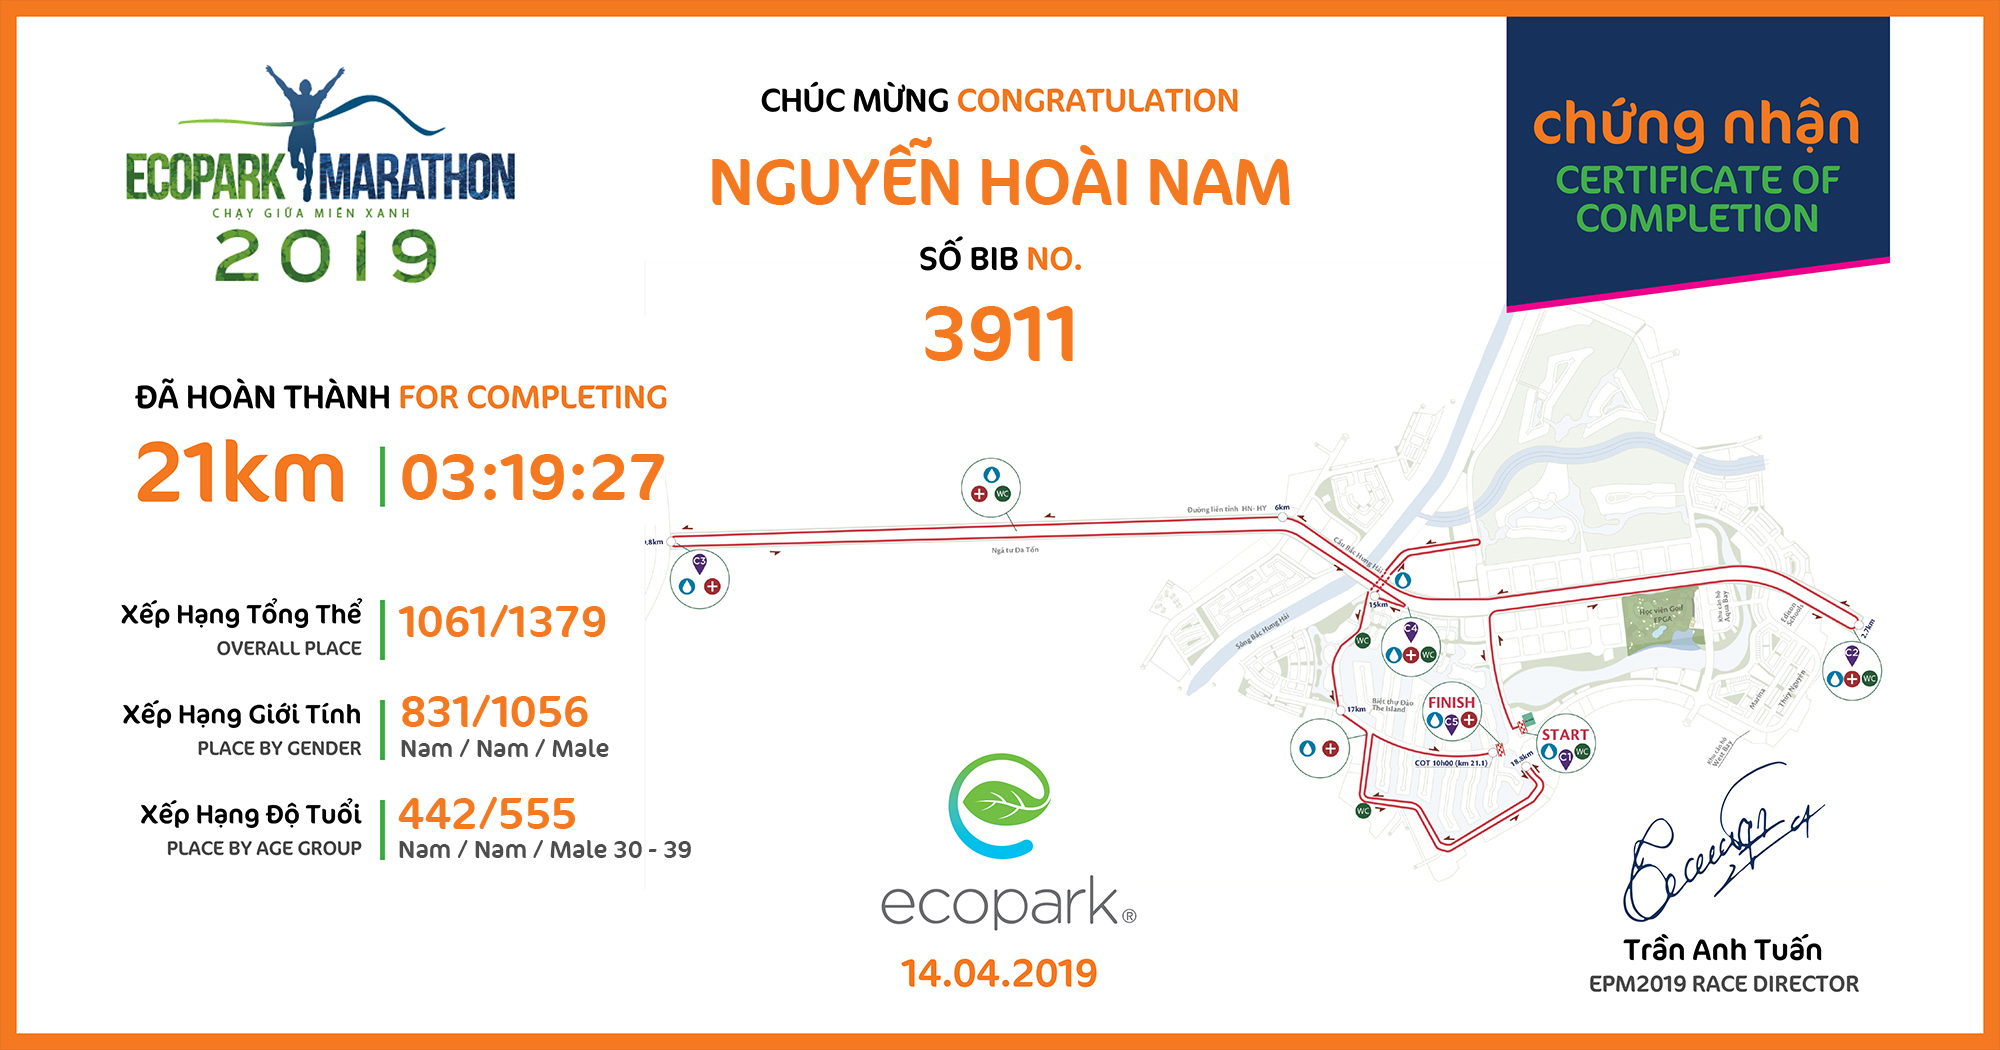 3911 - Nguyễn Hoài Nam